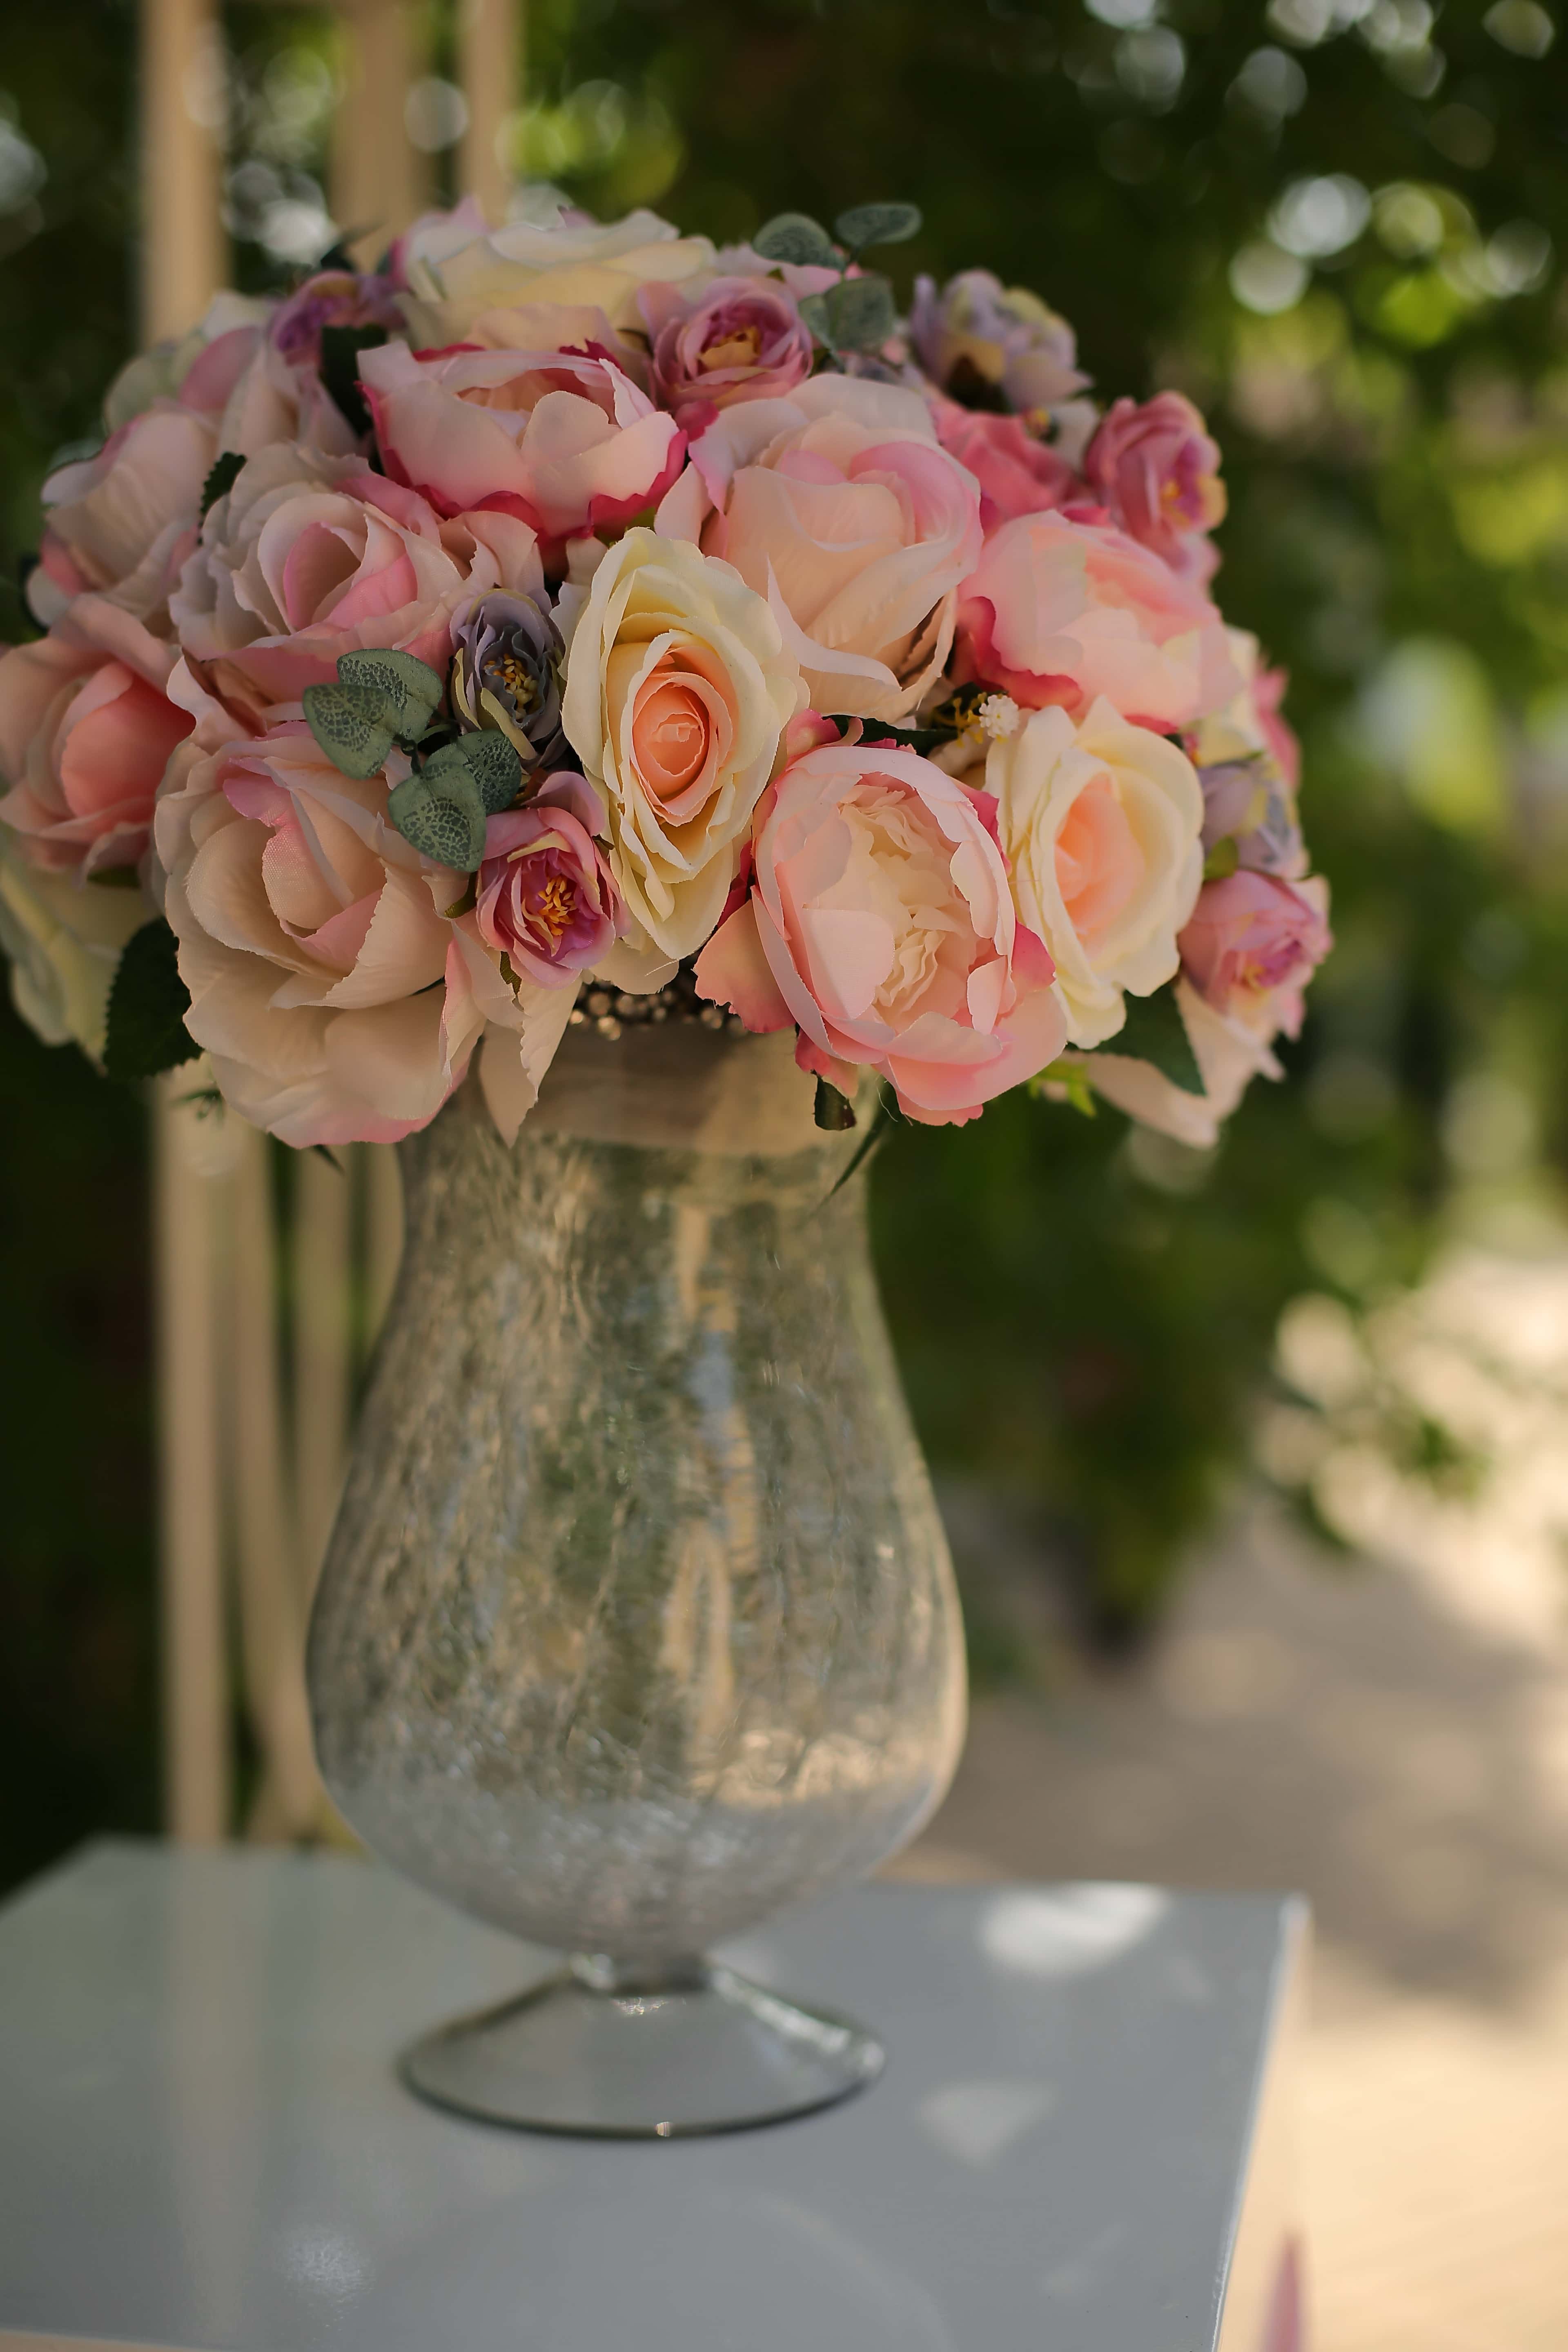 免费照片 玫瑰 水晶 粉红色 玻璃 柔和 静物 花 容器 花瓶 Jar